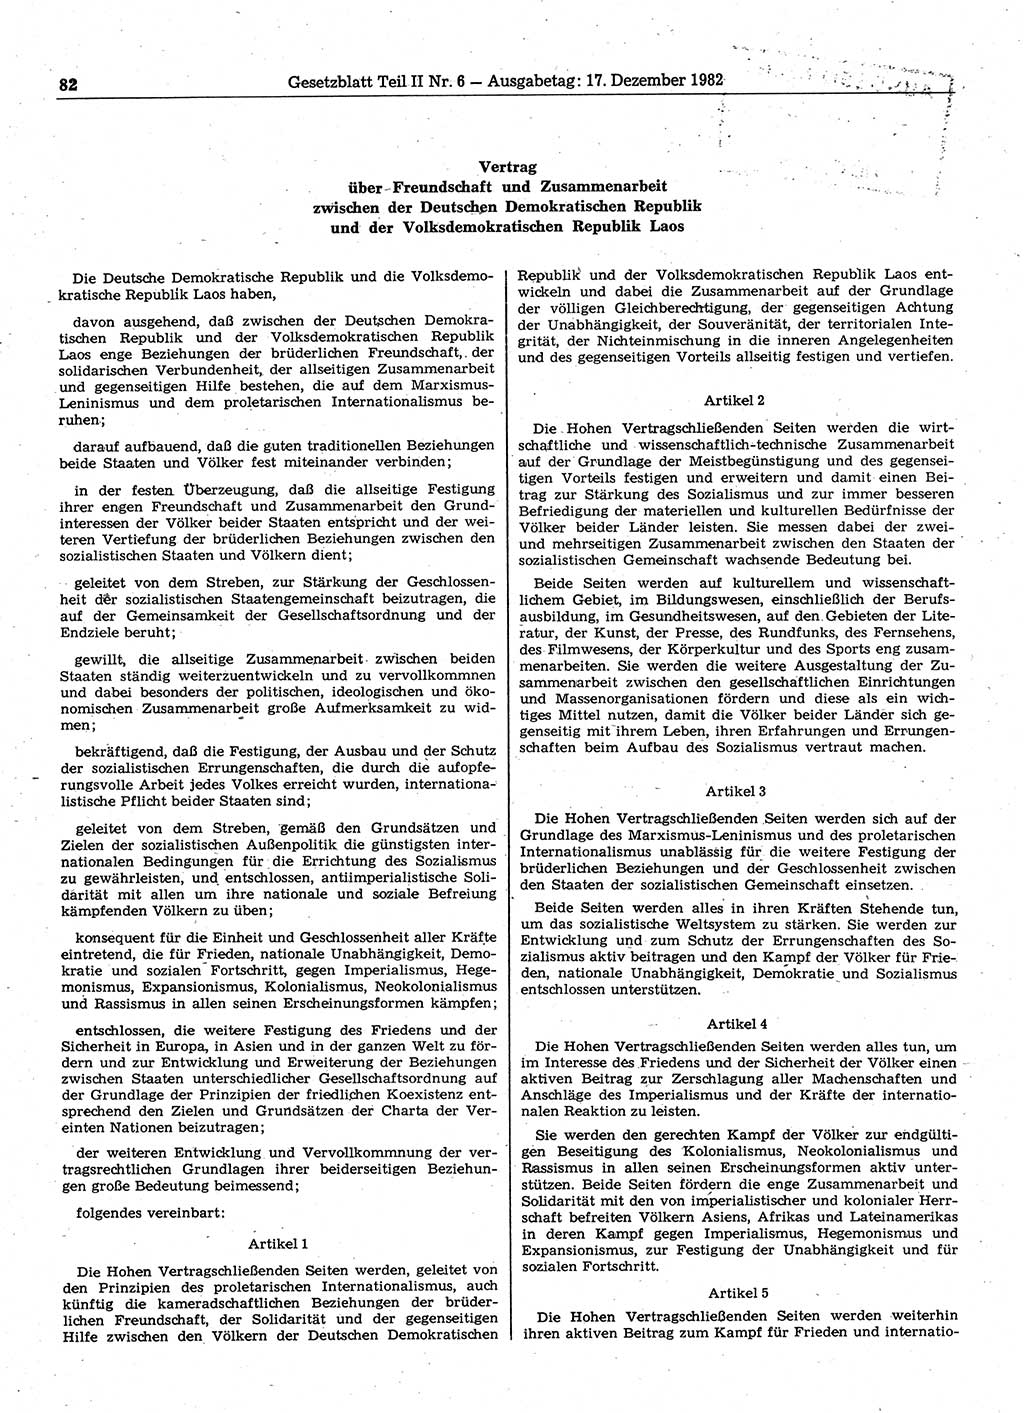 Gesetzblatt (GBl.) der Deutschen Demokratischen Republik (DDR) Teil ⅠⅠ 1982, Seite 82 (GBl. DDR ⅠⅠ 1982, S. 82)